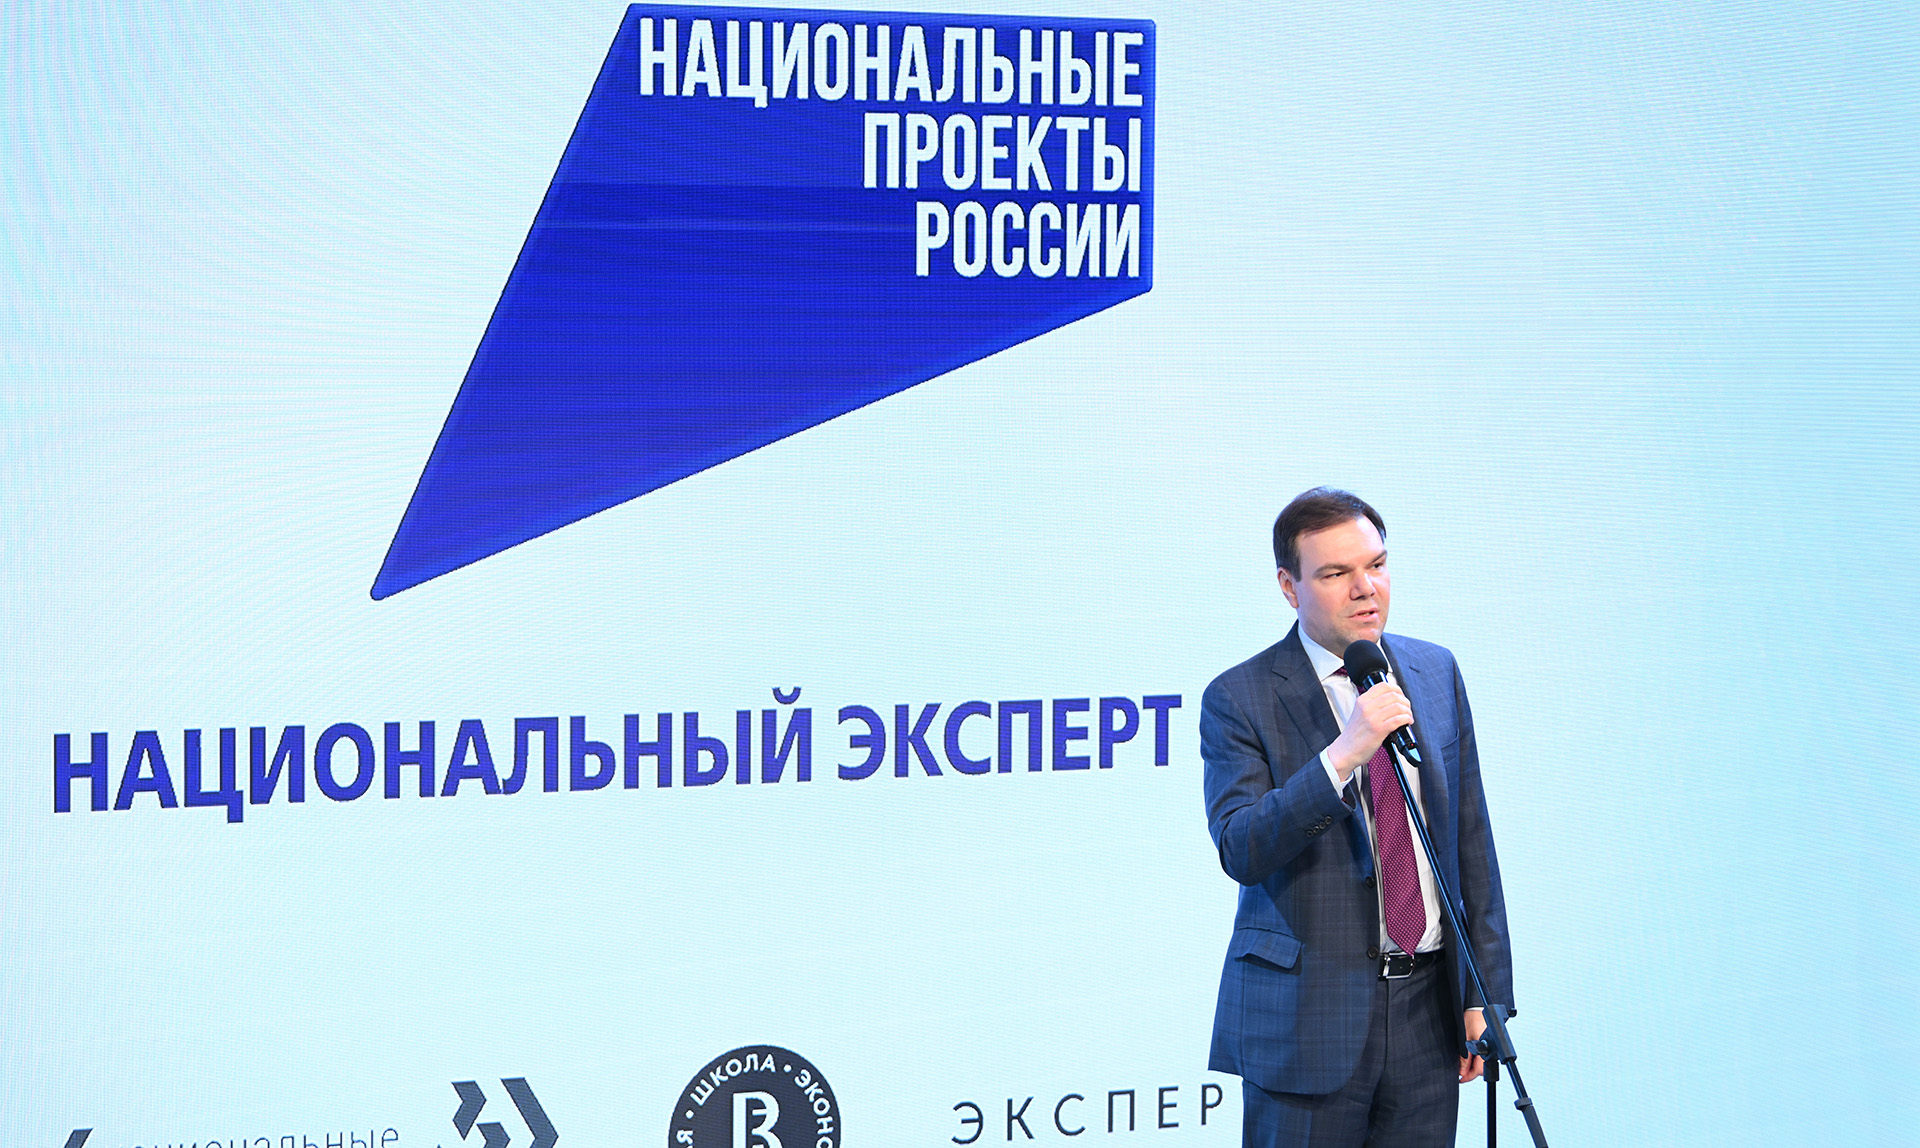 Заместителя руководителя аппарата правительства Российской Федерации Леонид Левин на торжественном мероприятии 